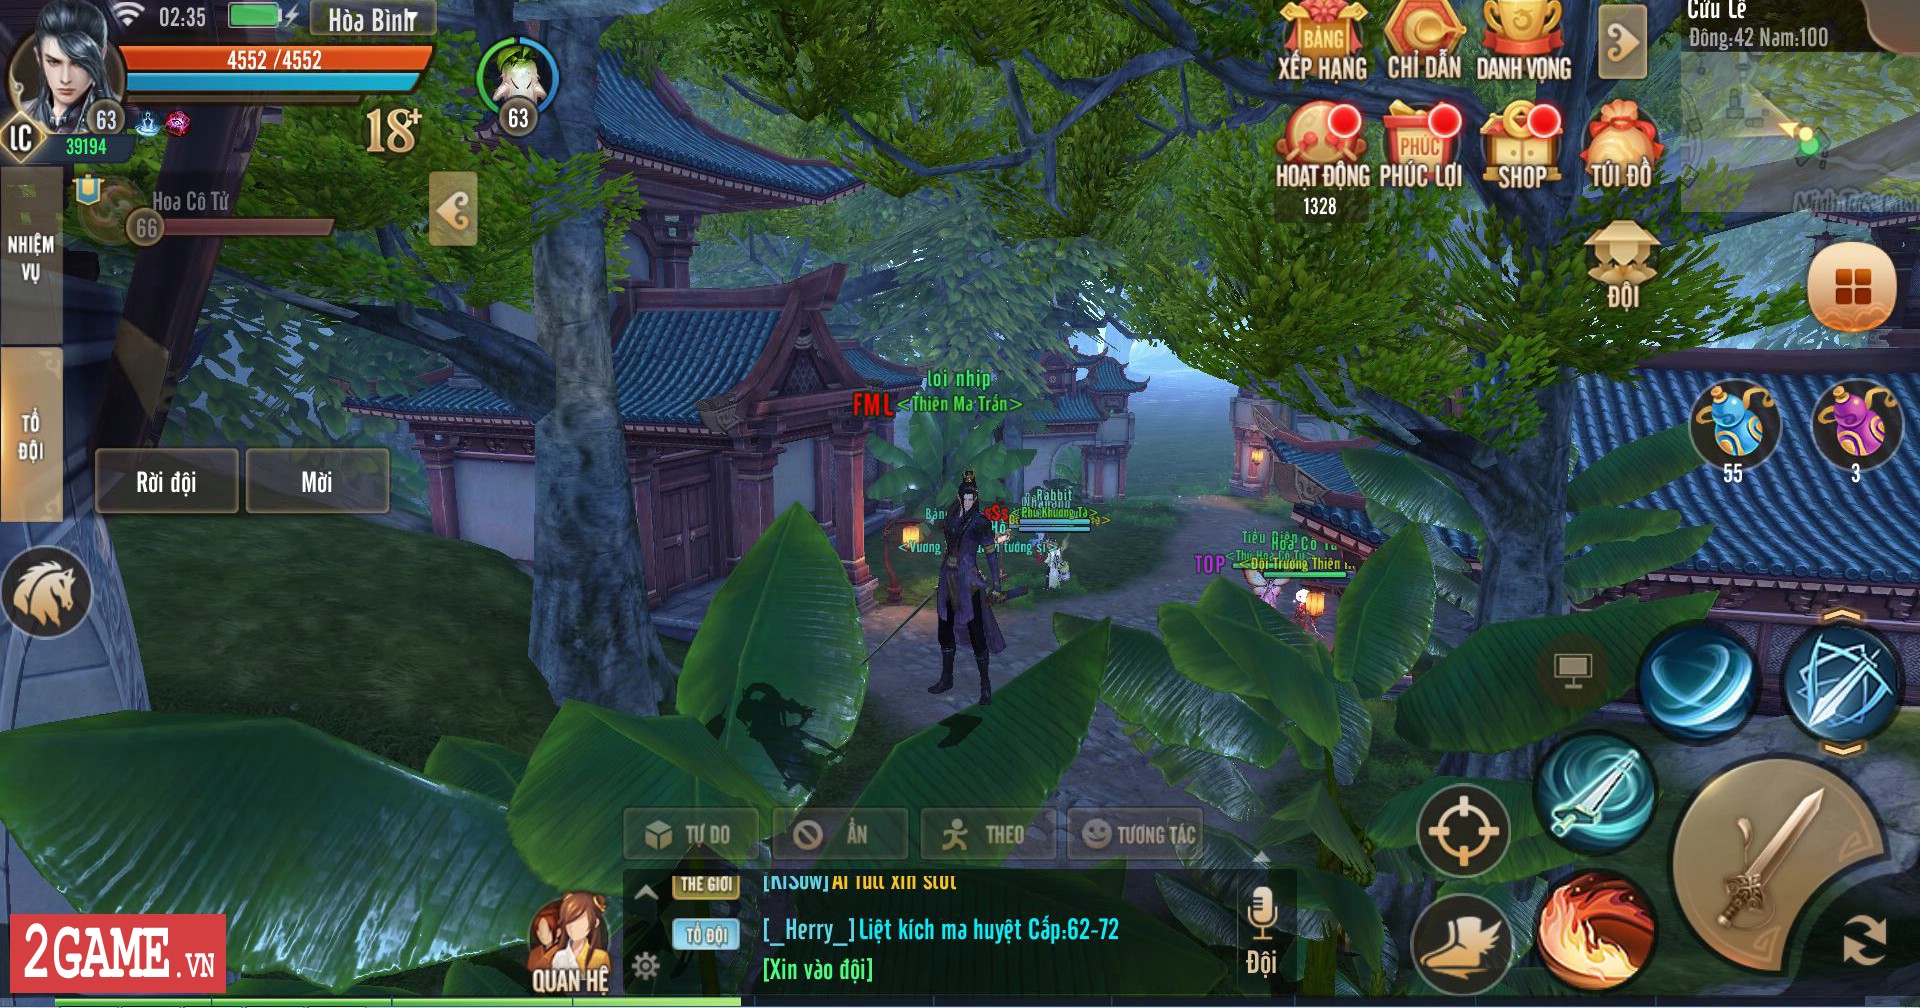 Trong Thiên Hạ 3D game thủ lúc nào cũng cần phối hợp nhau để săn được đồ xịn